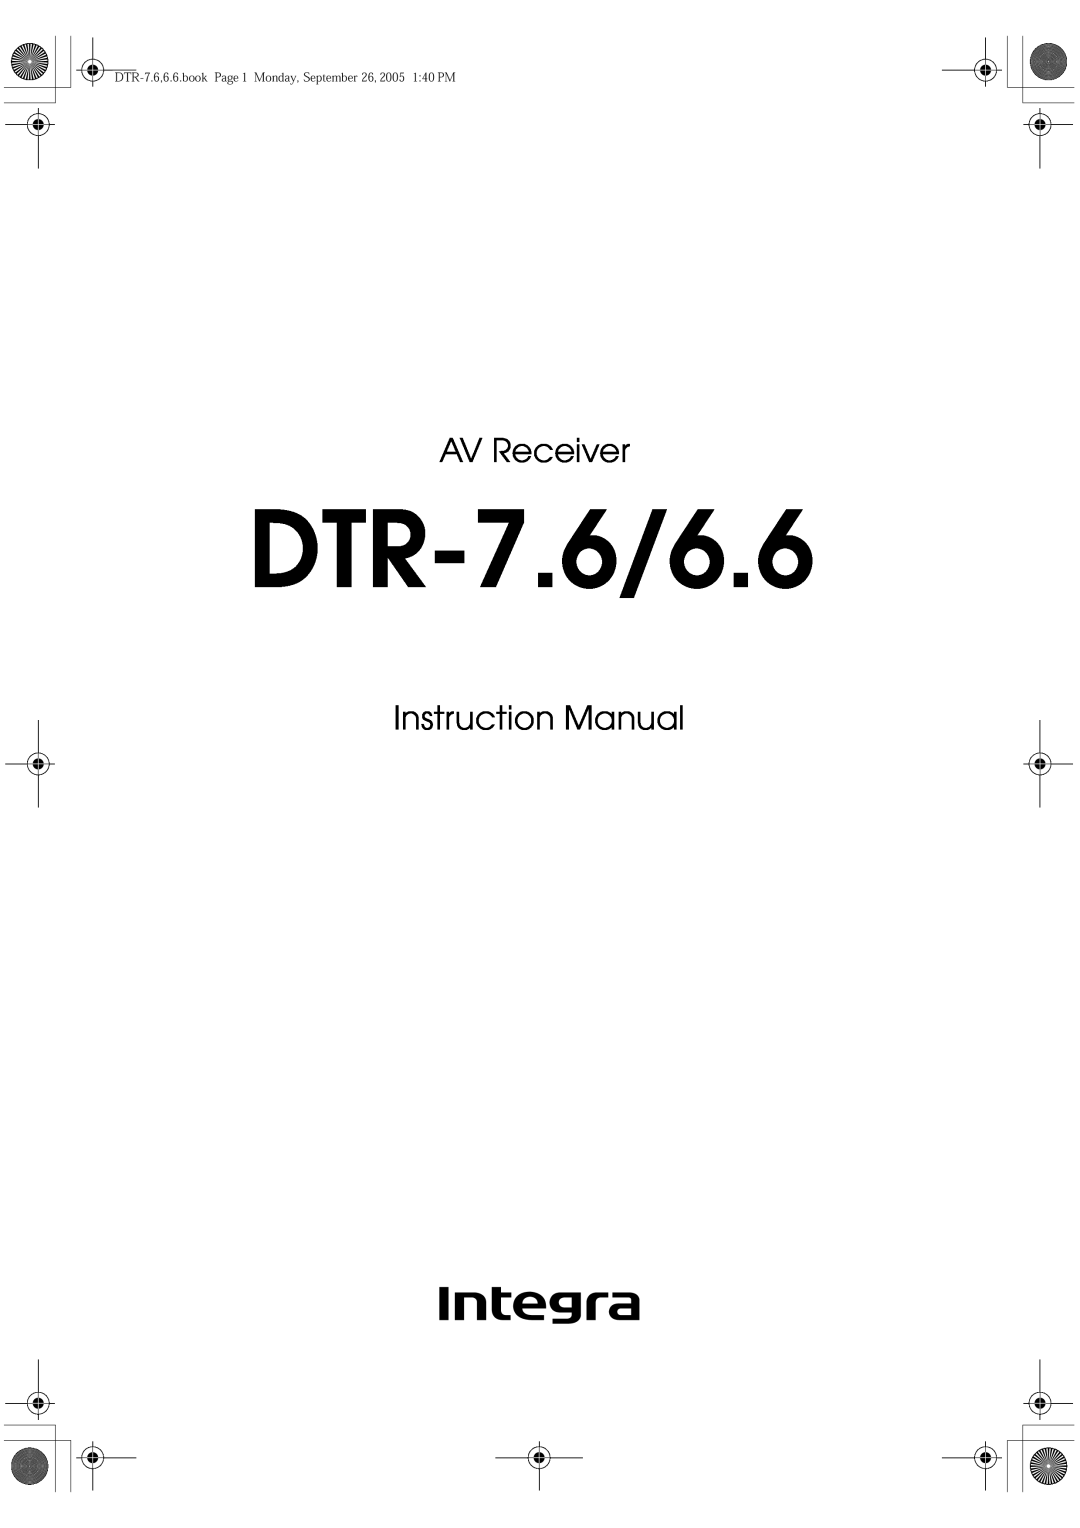 Integra DTR-7.6/6.6 instruction manual AV Receiver 